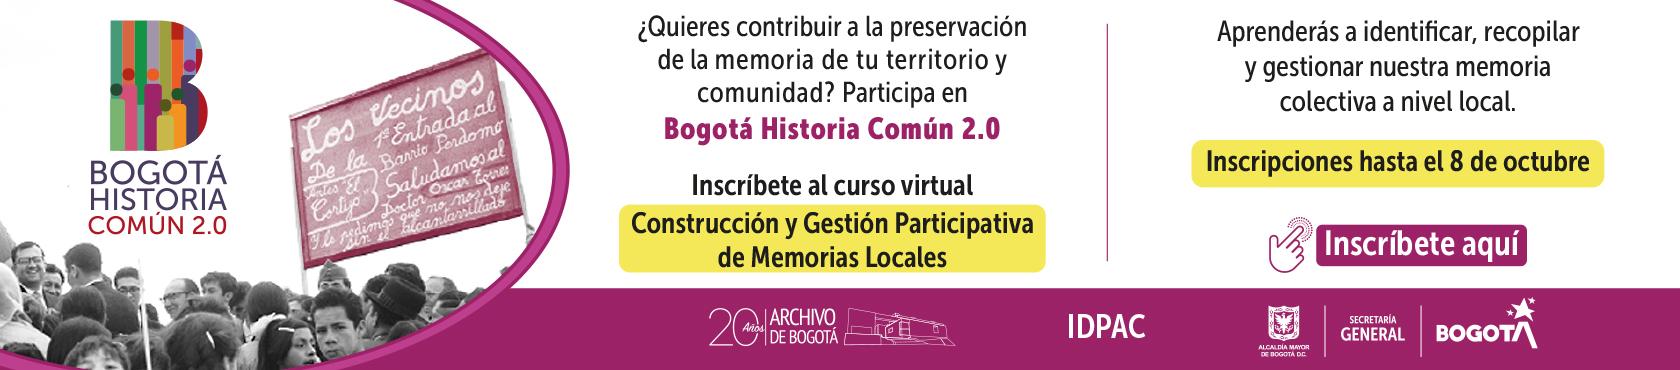 Bogotá Historia Común 2.0